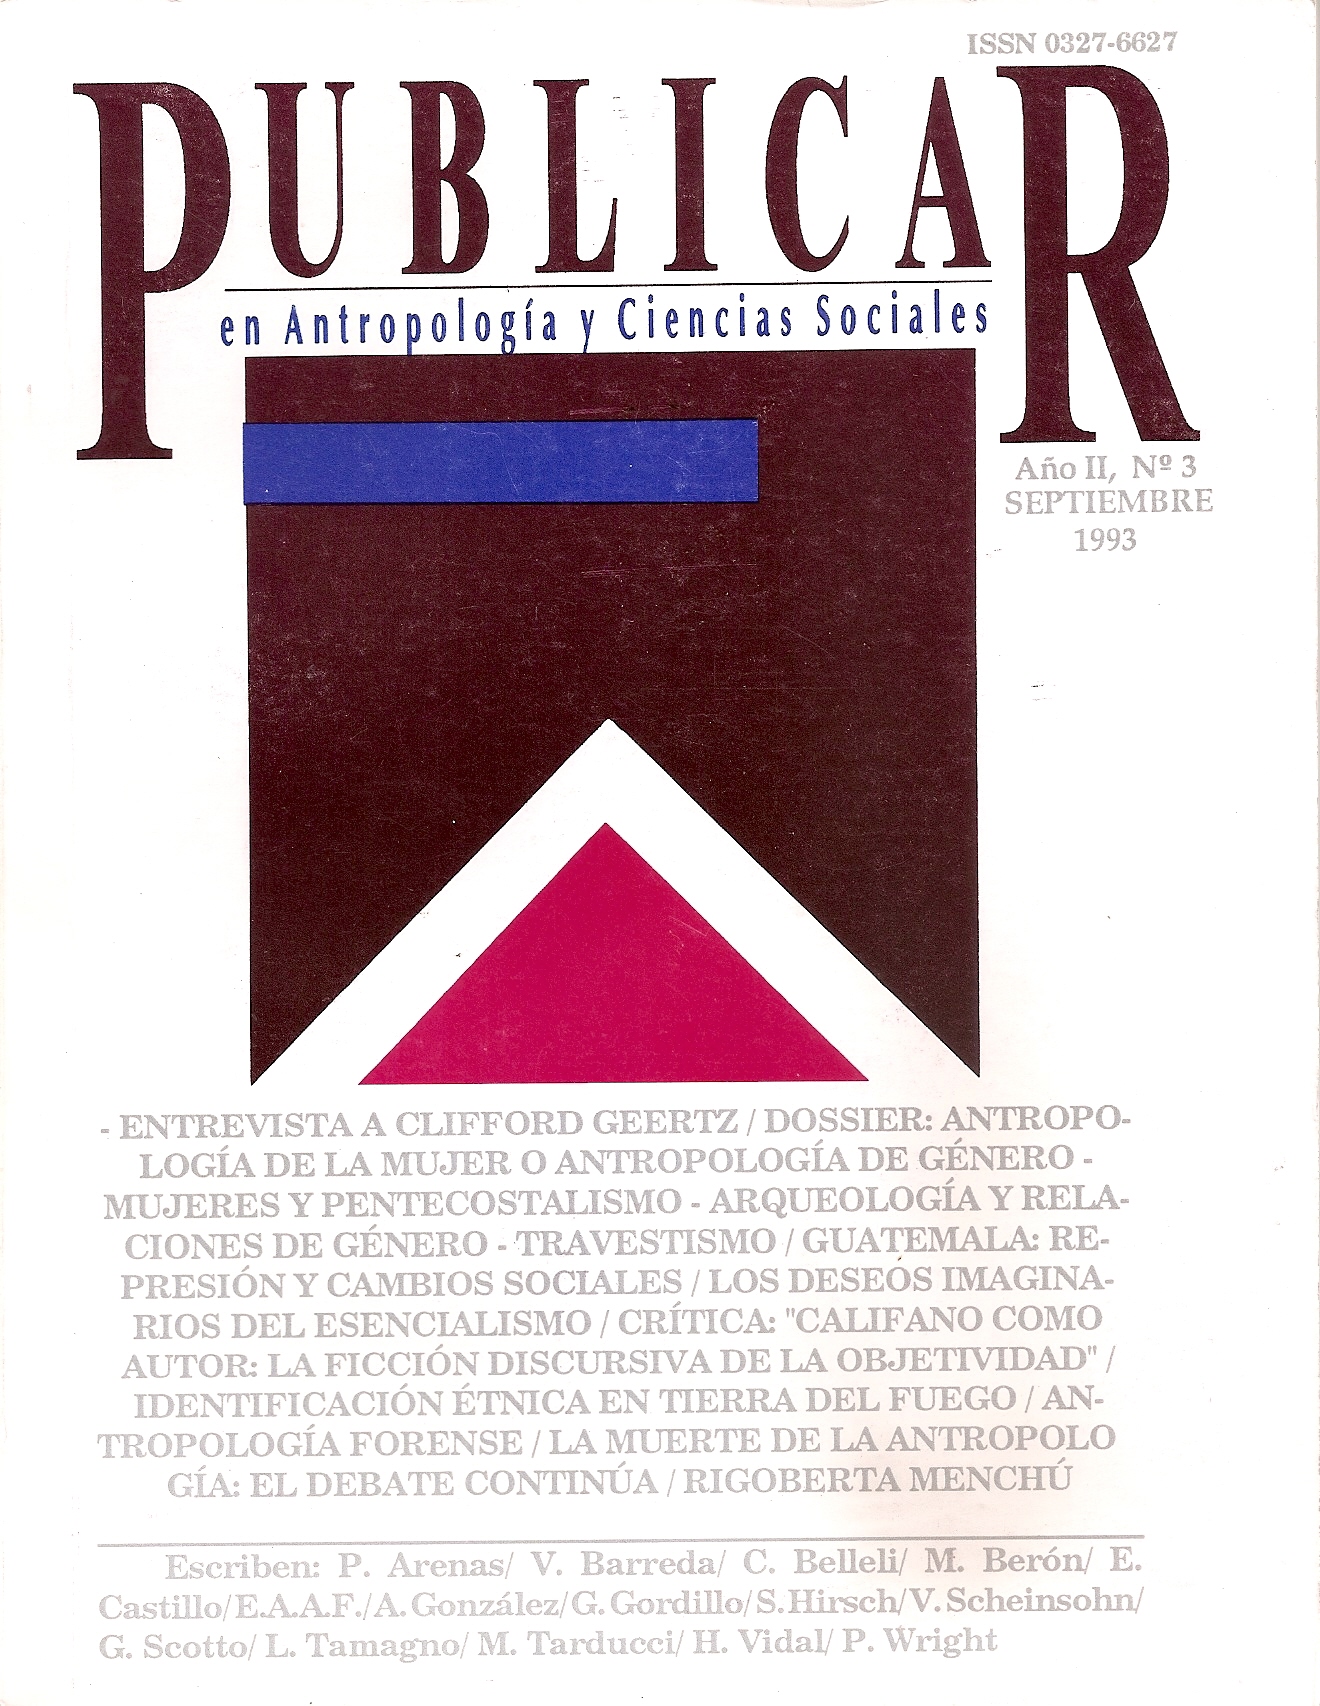 					Ver Núm. 3 (1993): PUBLICAR, año II, n°  III, septiembre 1993
				